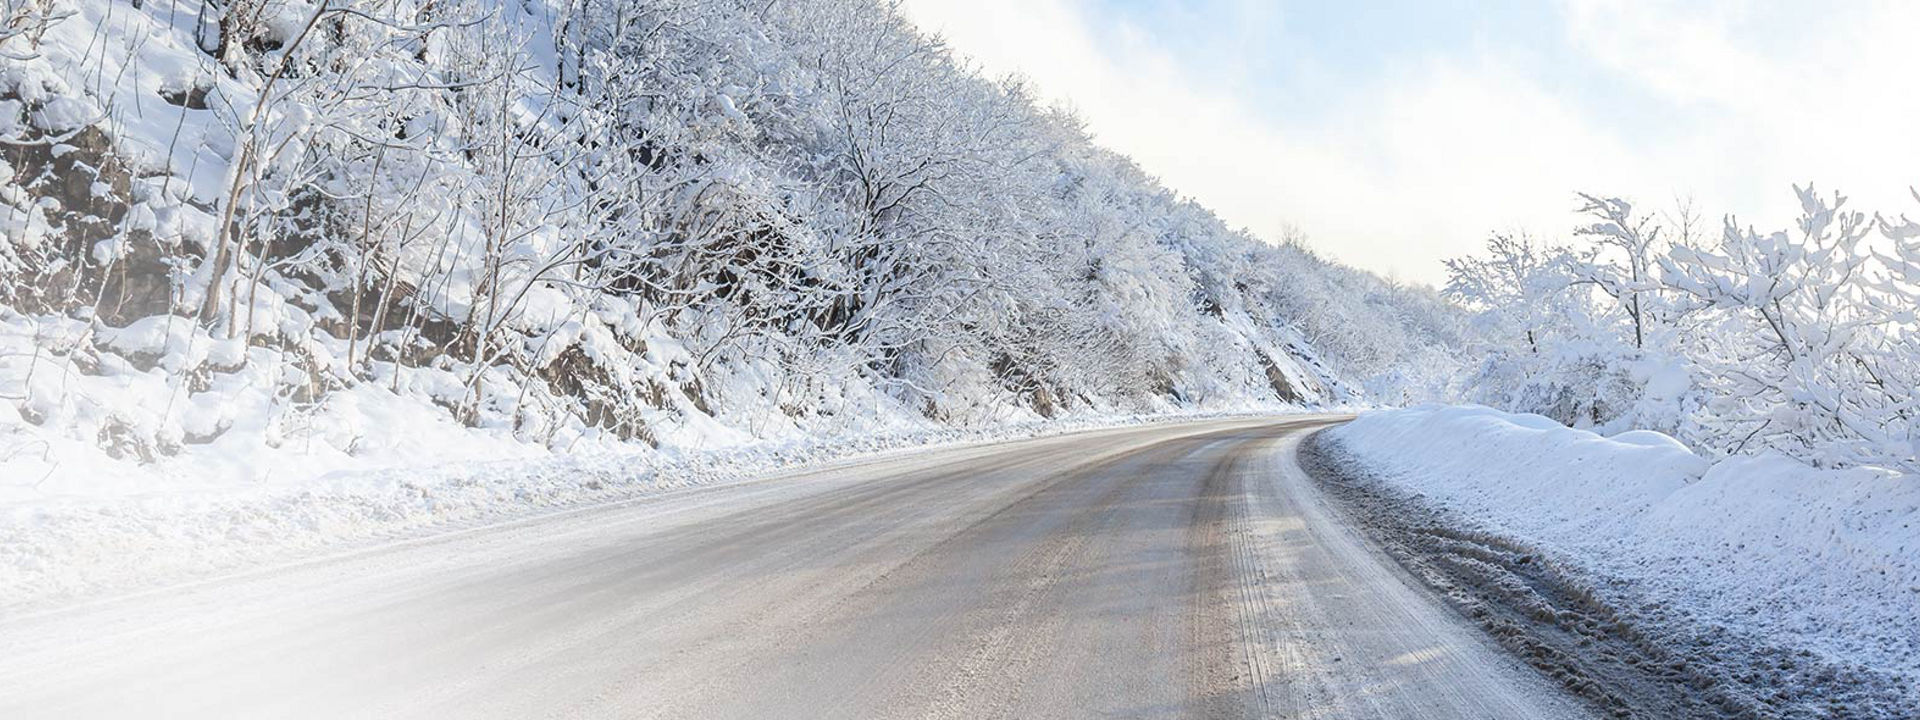 Esta imagem mostra uma estrada de inverno coberta de neve com marcas de pneus de Inverno para camião da Bridgestone.